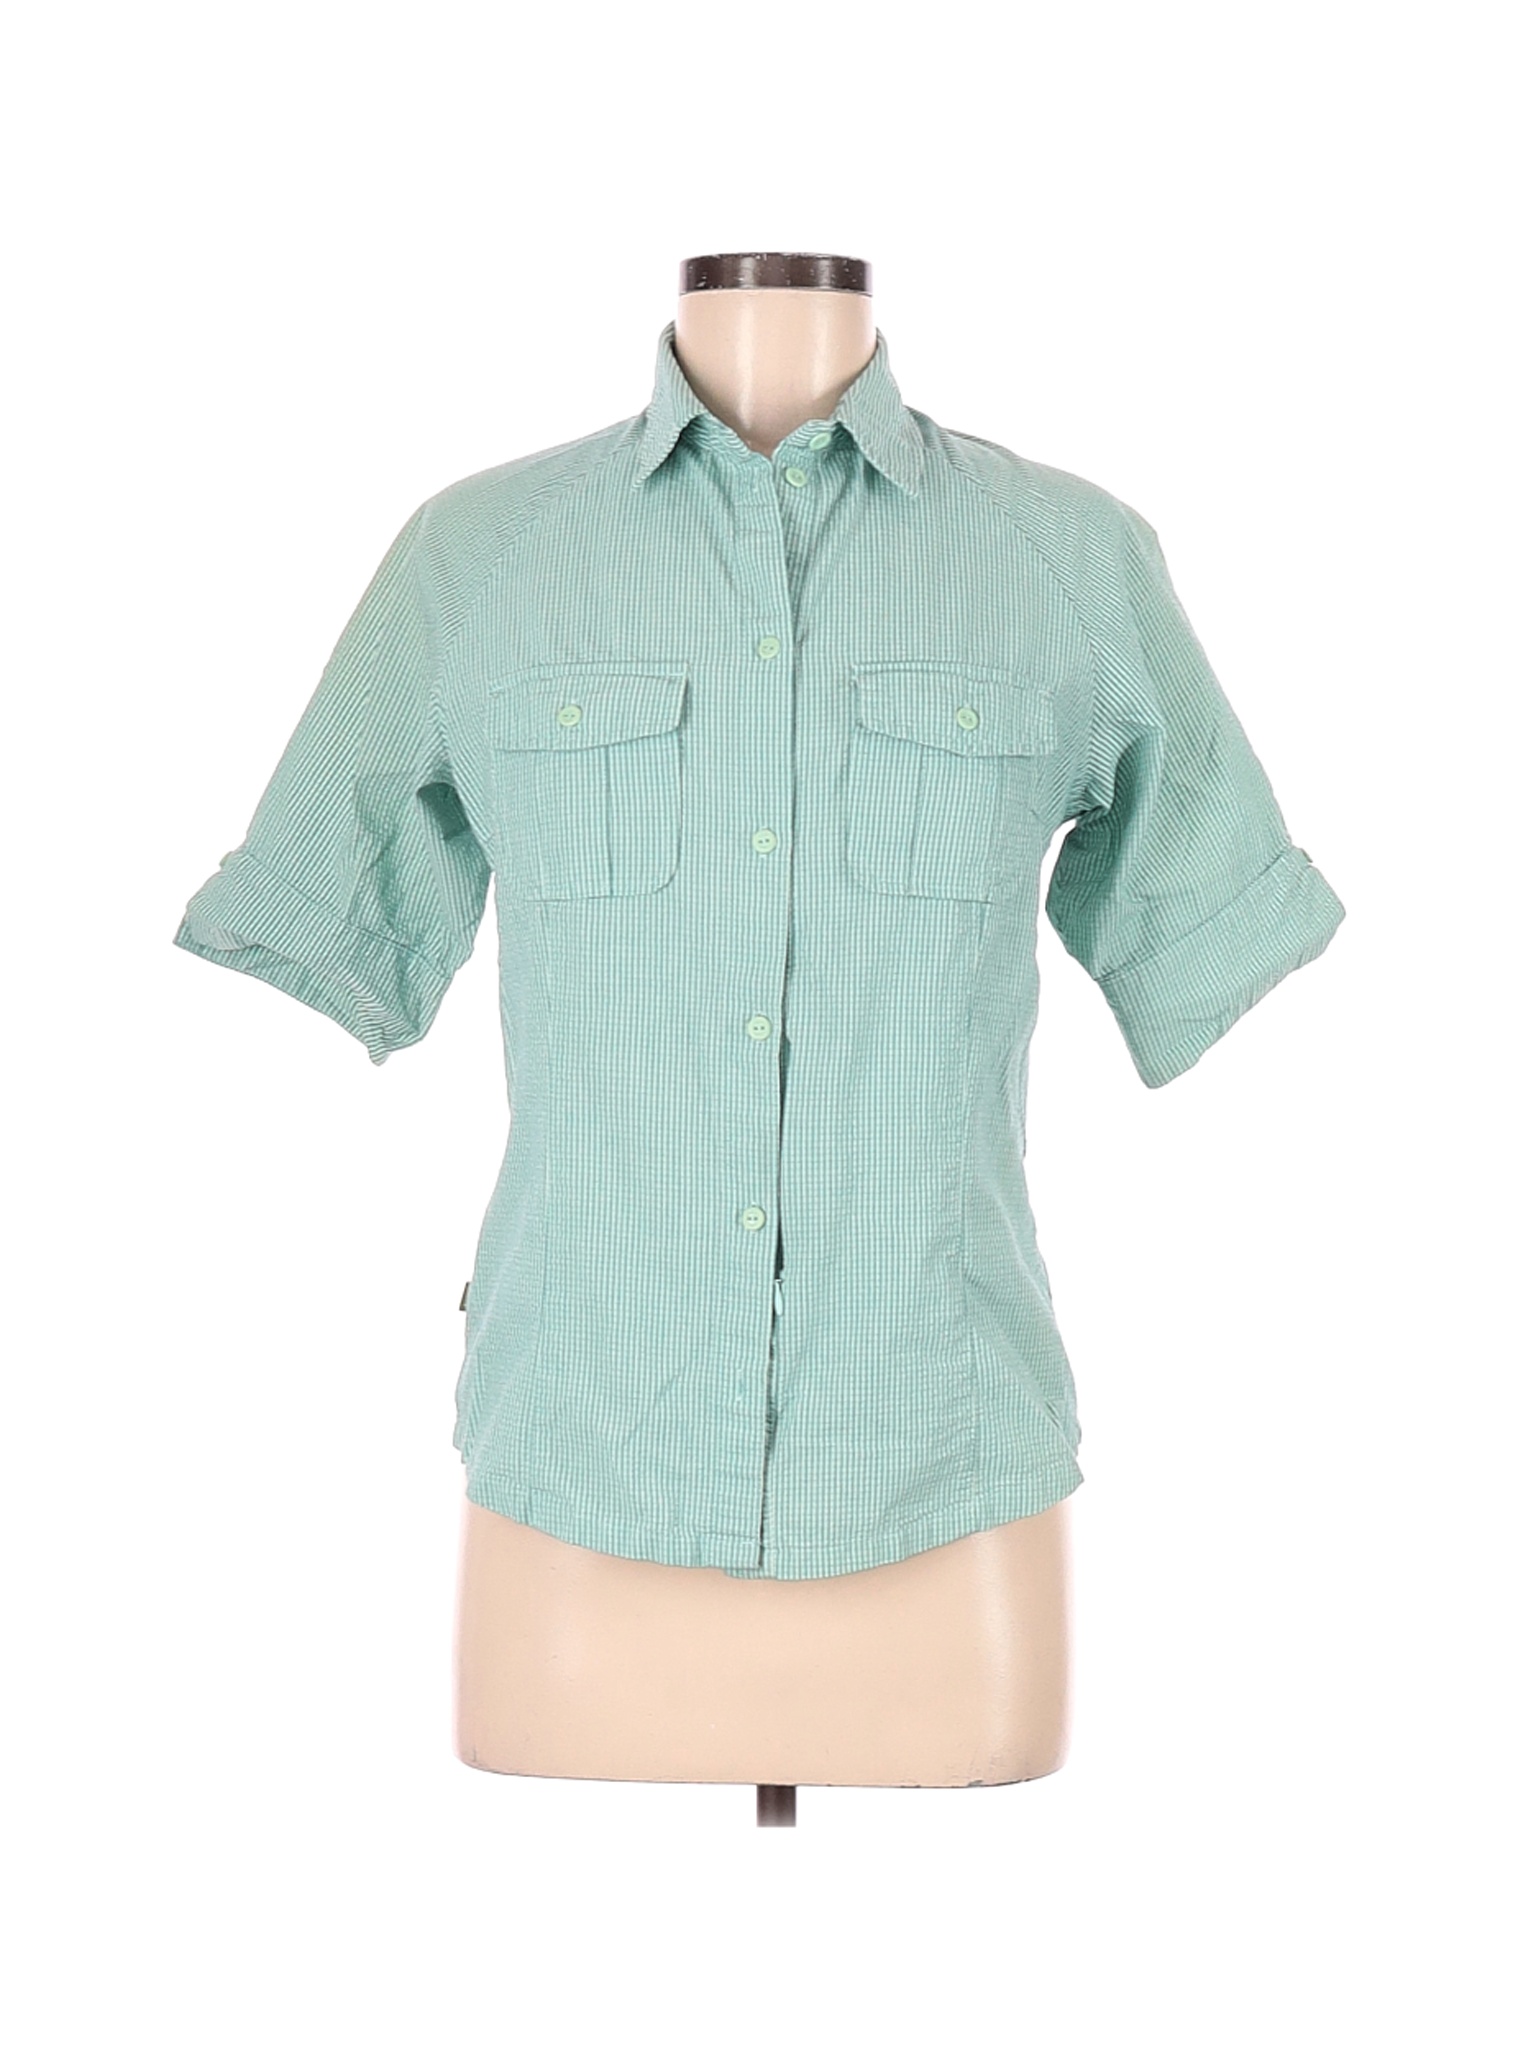 REI Women Blue Short Sleeve Button-Down Shirt M | eBay